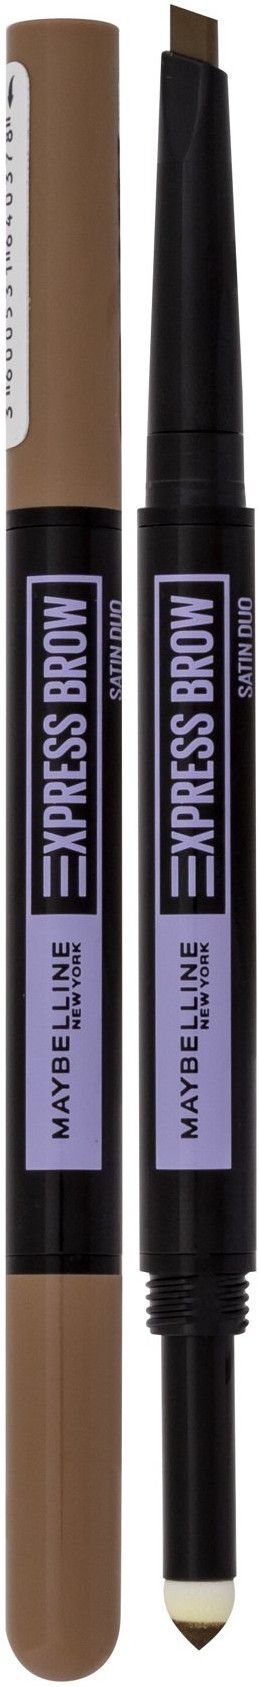 Satin Express Duo Dark Maybelline 01 Brow Blonde